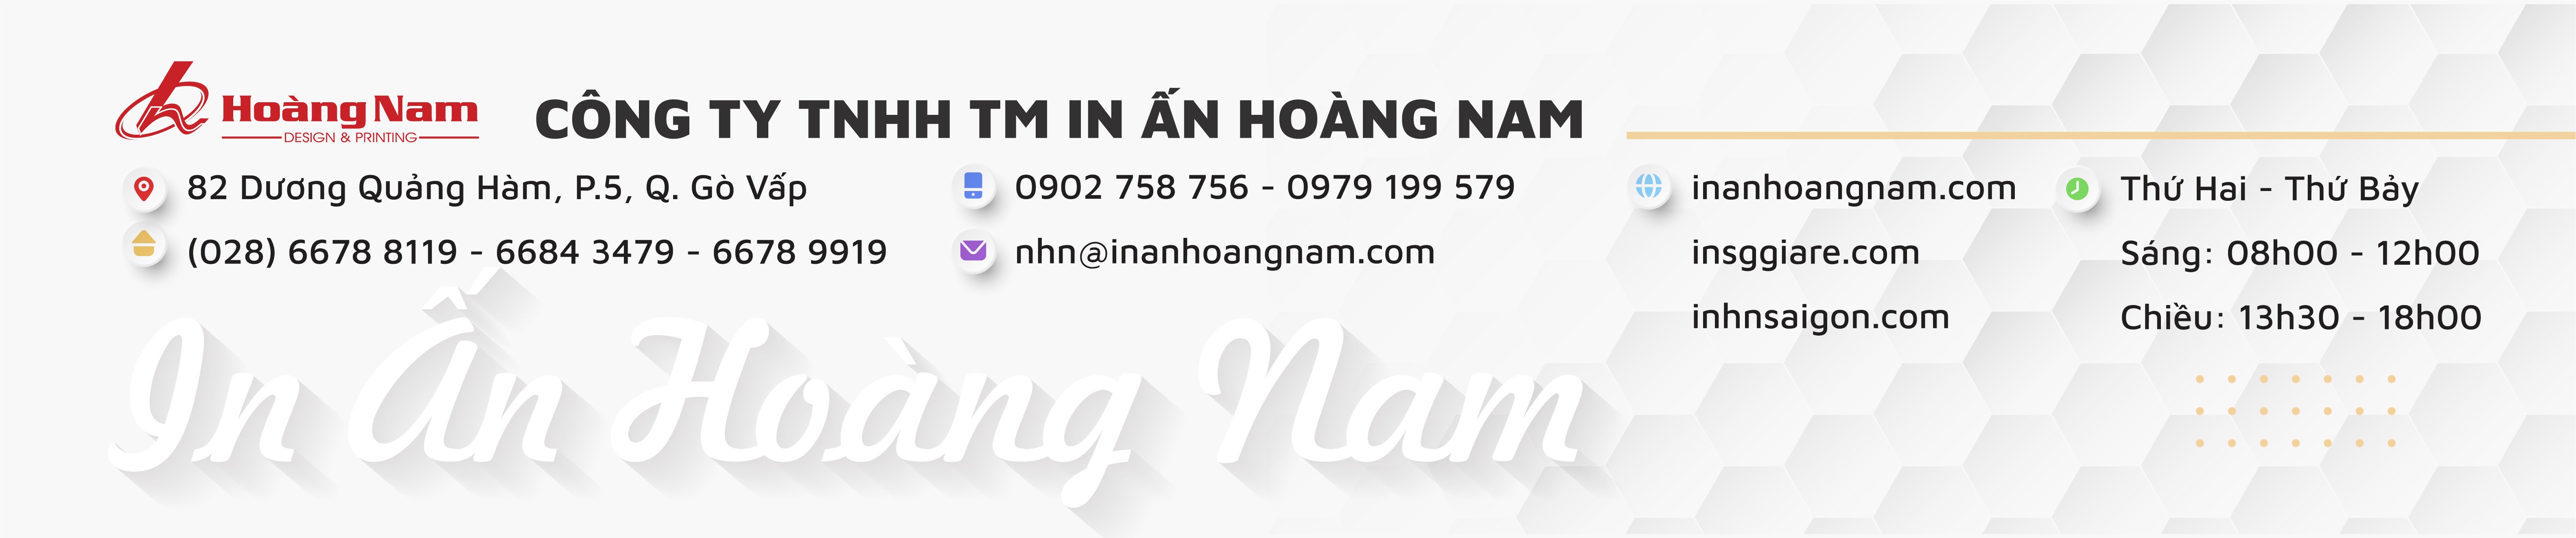 Thông tin Công ty in ấn Hoàng Nam.